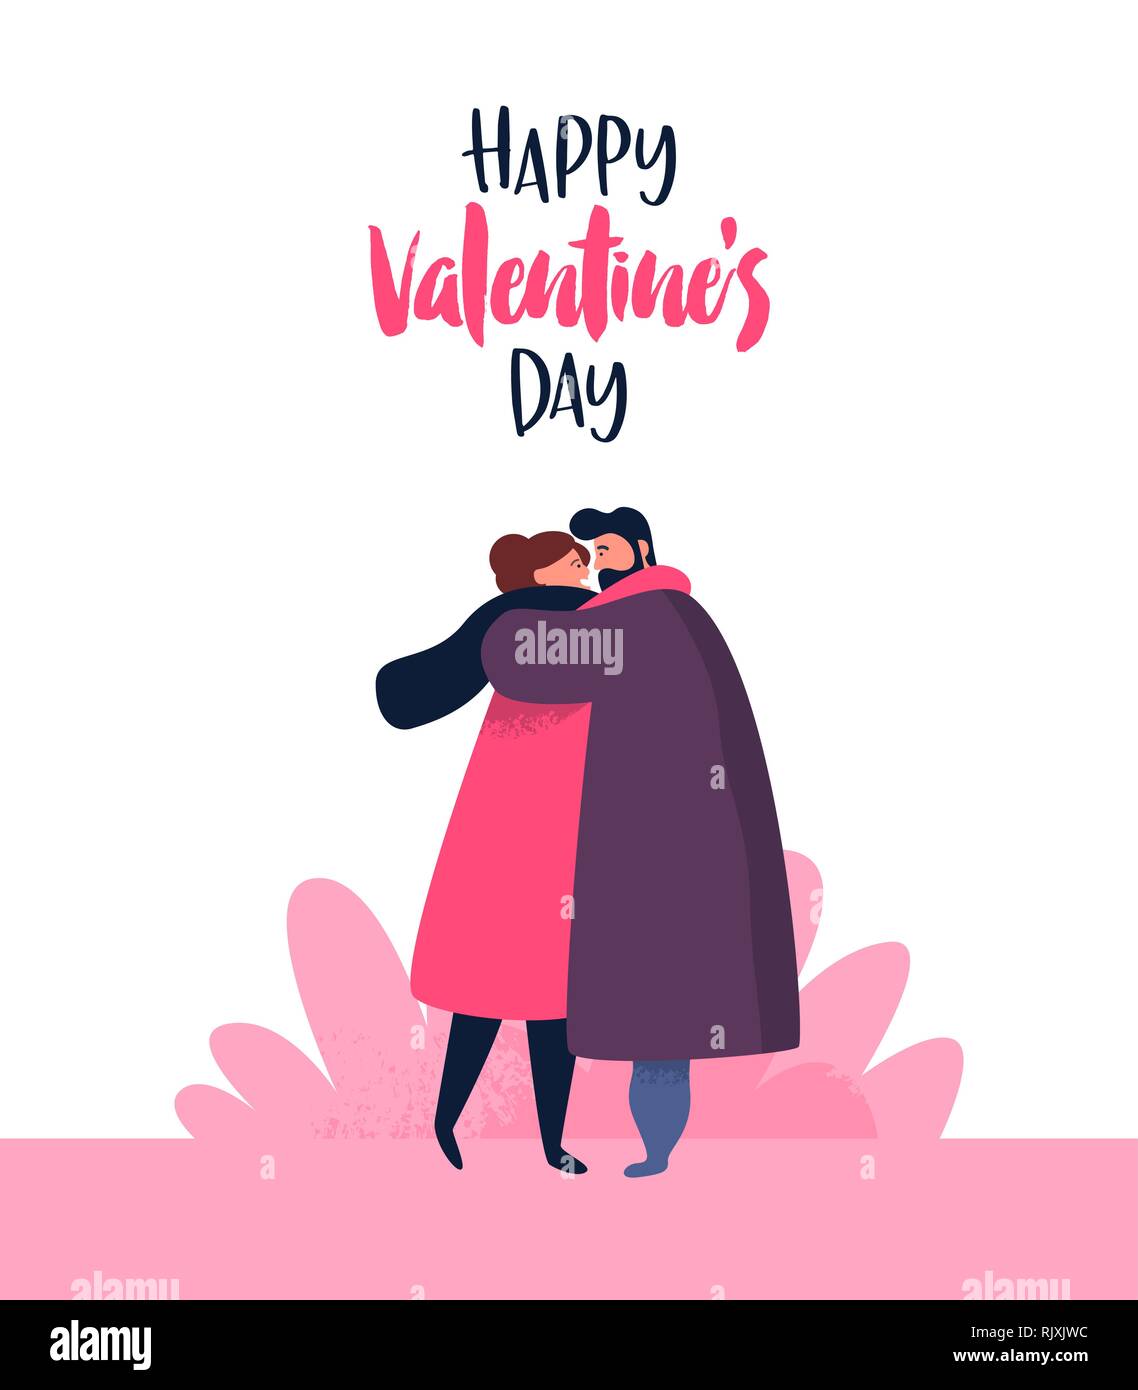 Happy Valentines Day illustration cartoon character. Jeune couple hugging pour date romantique concept. Petit ami et petite amie en amour avec maison de tex Illustration de Vecteur